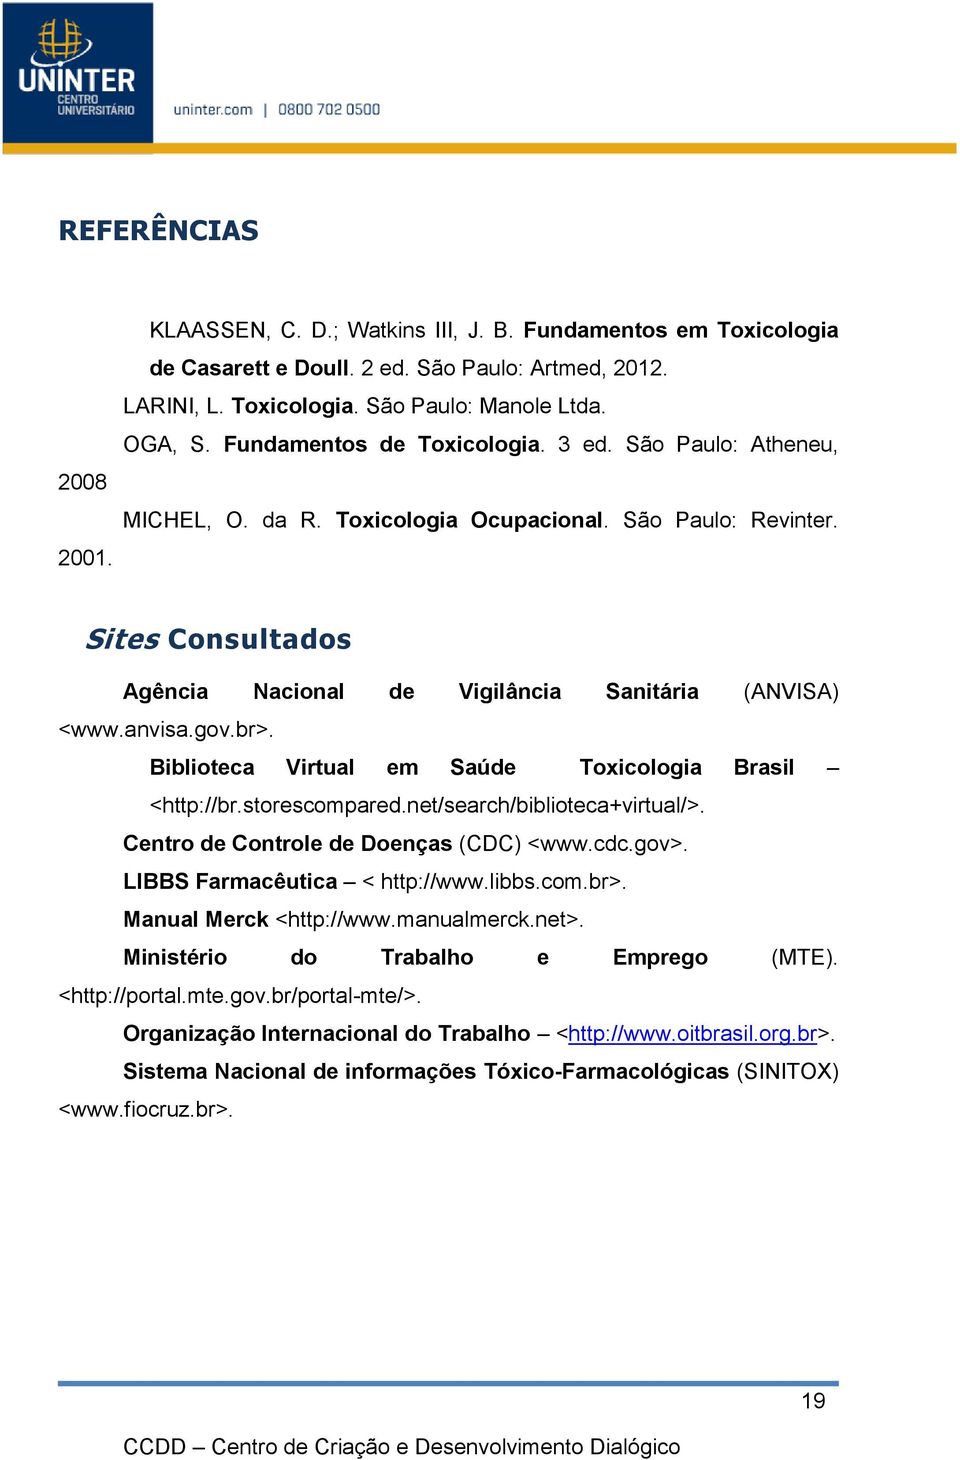 gov.br>. Biblioteca Virtual em Saúde Toxicologia Brasil <http://br.storescompared.net/search/biblioteca+virtual/>. Centro de Controle de Doenças (CDC) <www.cdc.gov>. LIBBS Farmacêutica < http://www.